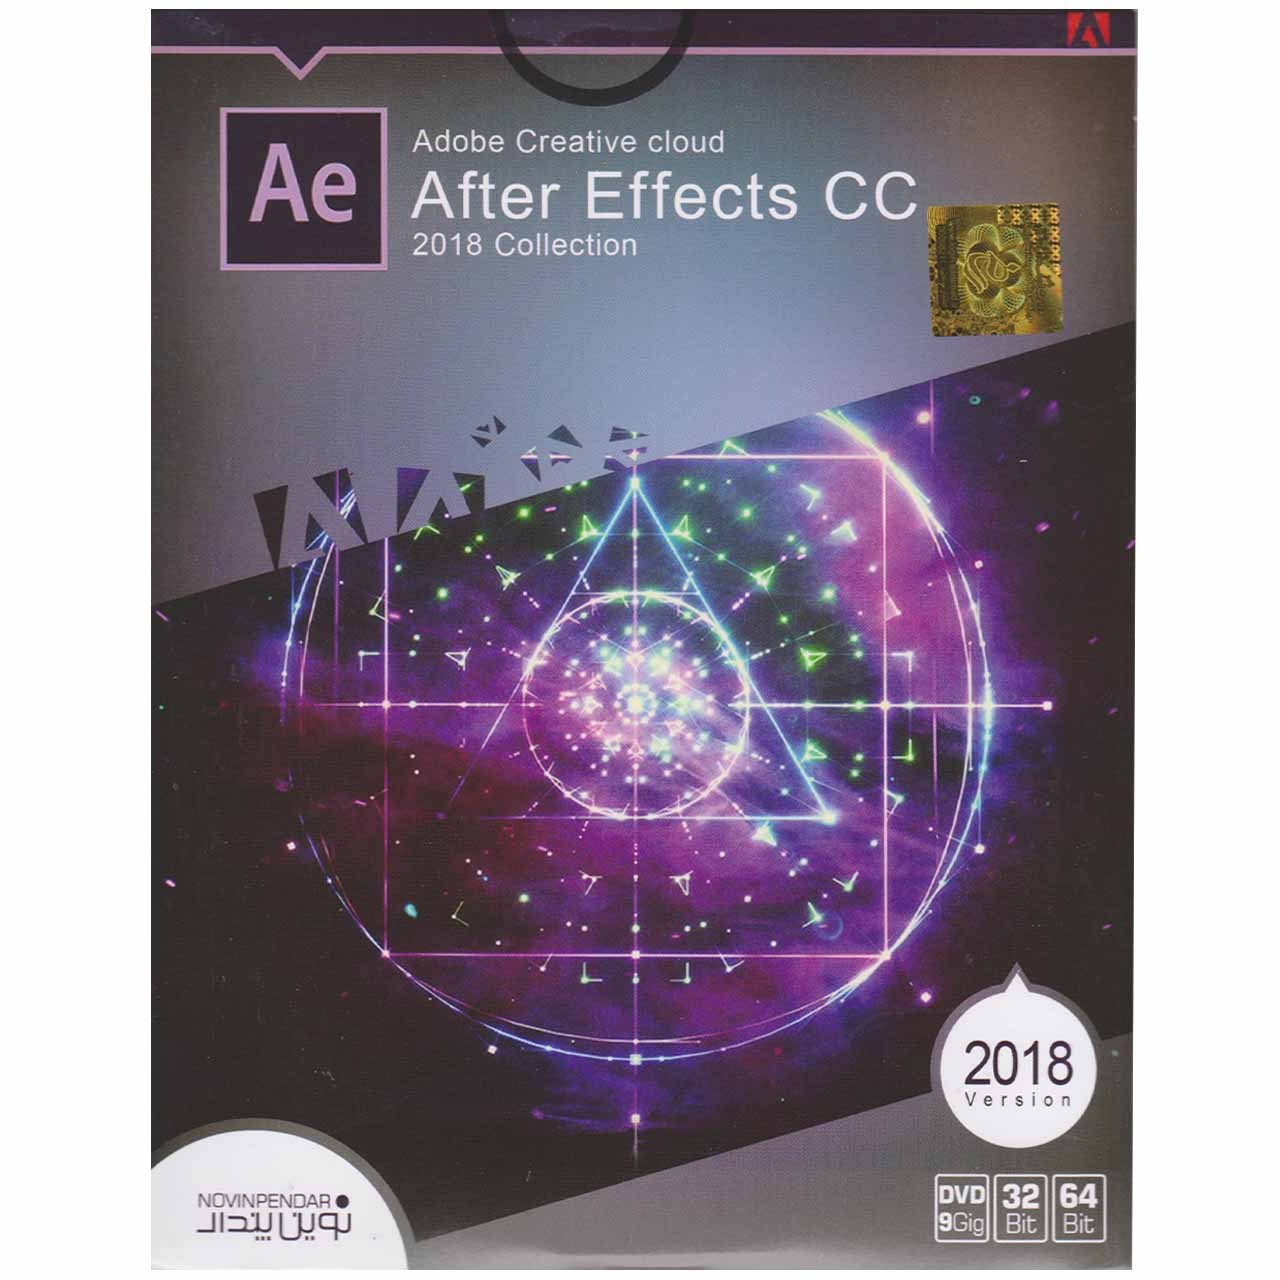 نرم افزار Adobe Creative Cloud After Effects CC 2018 Collection  نشر نوین پندار